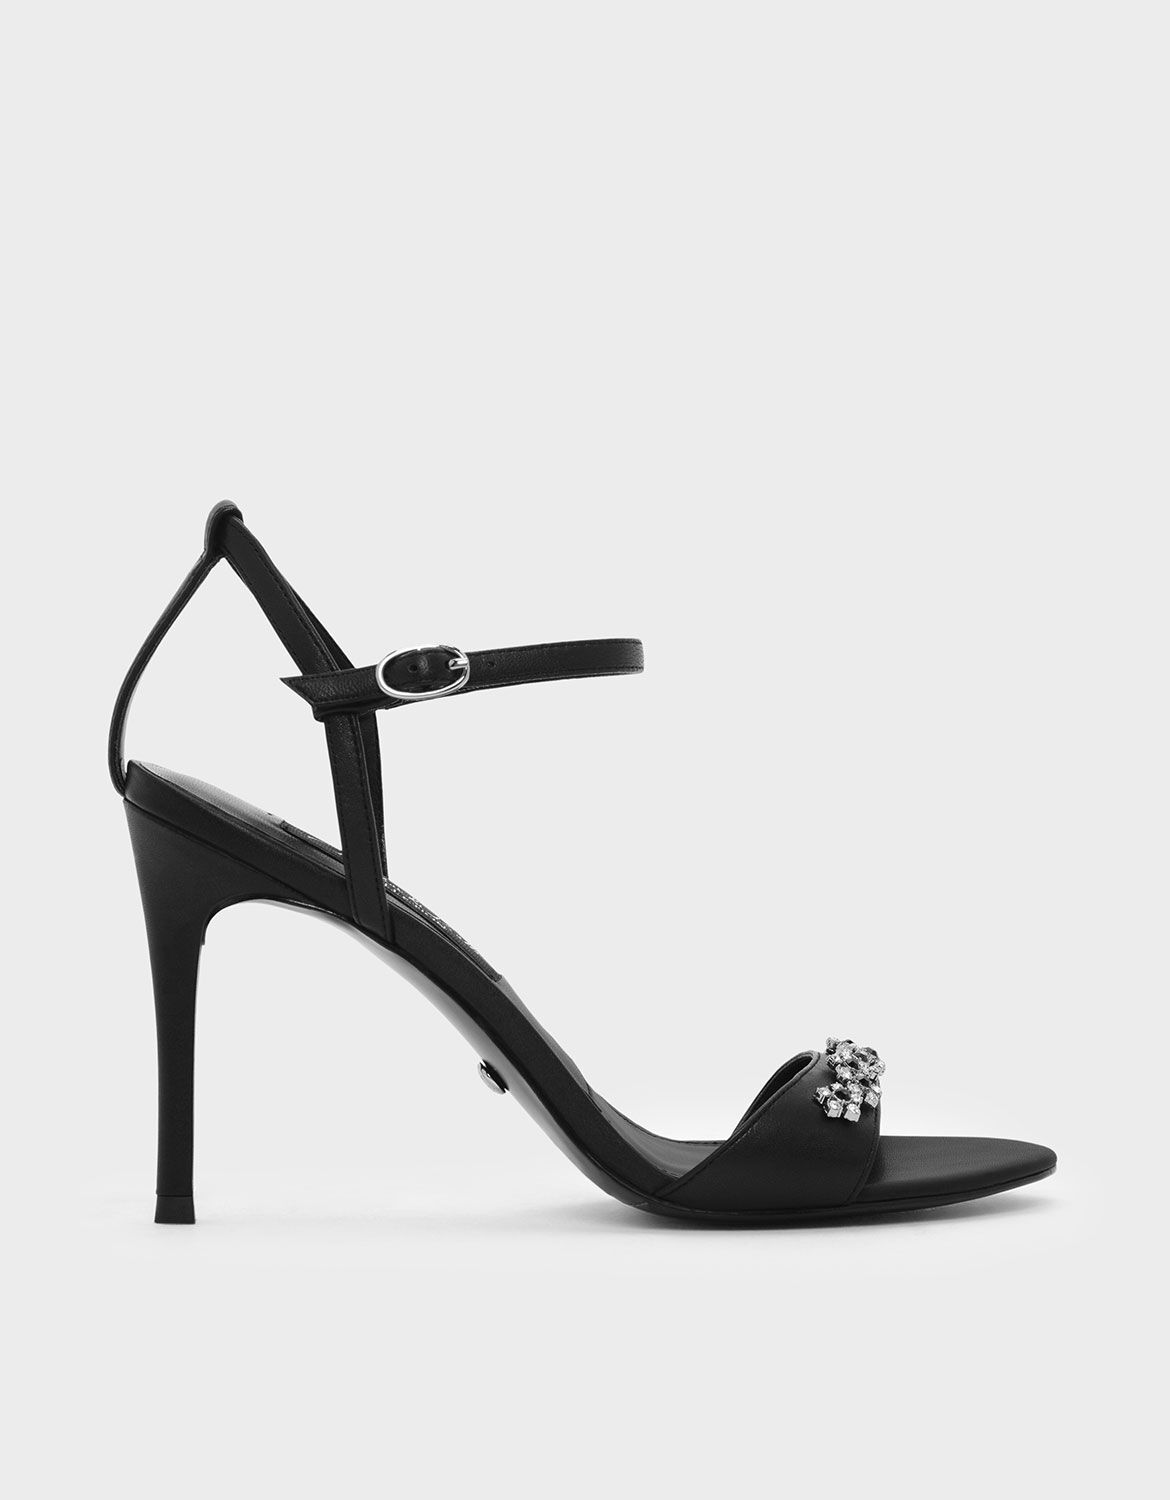 black floral sandals